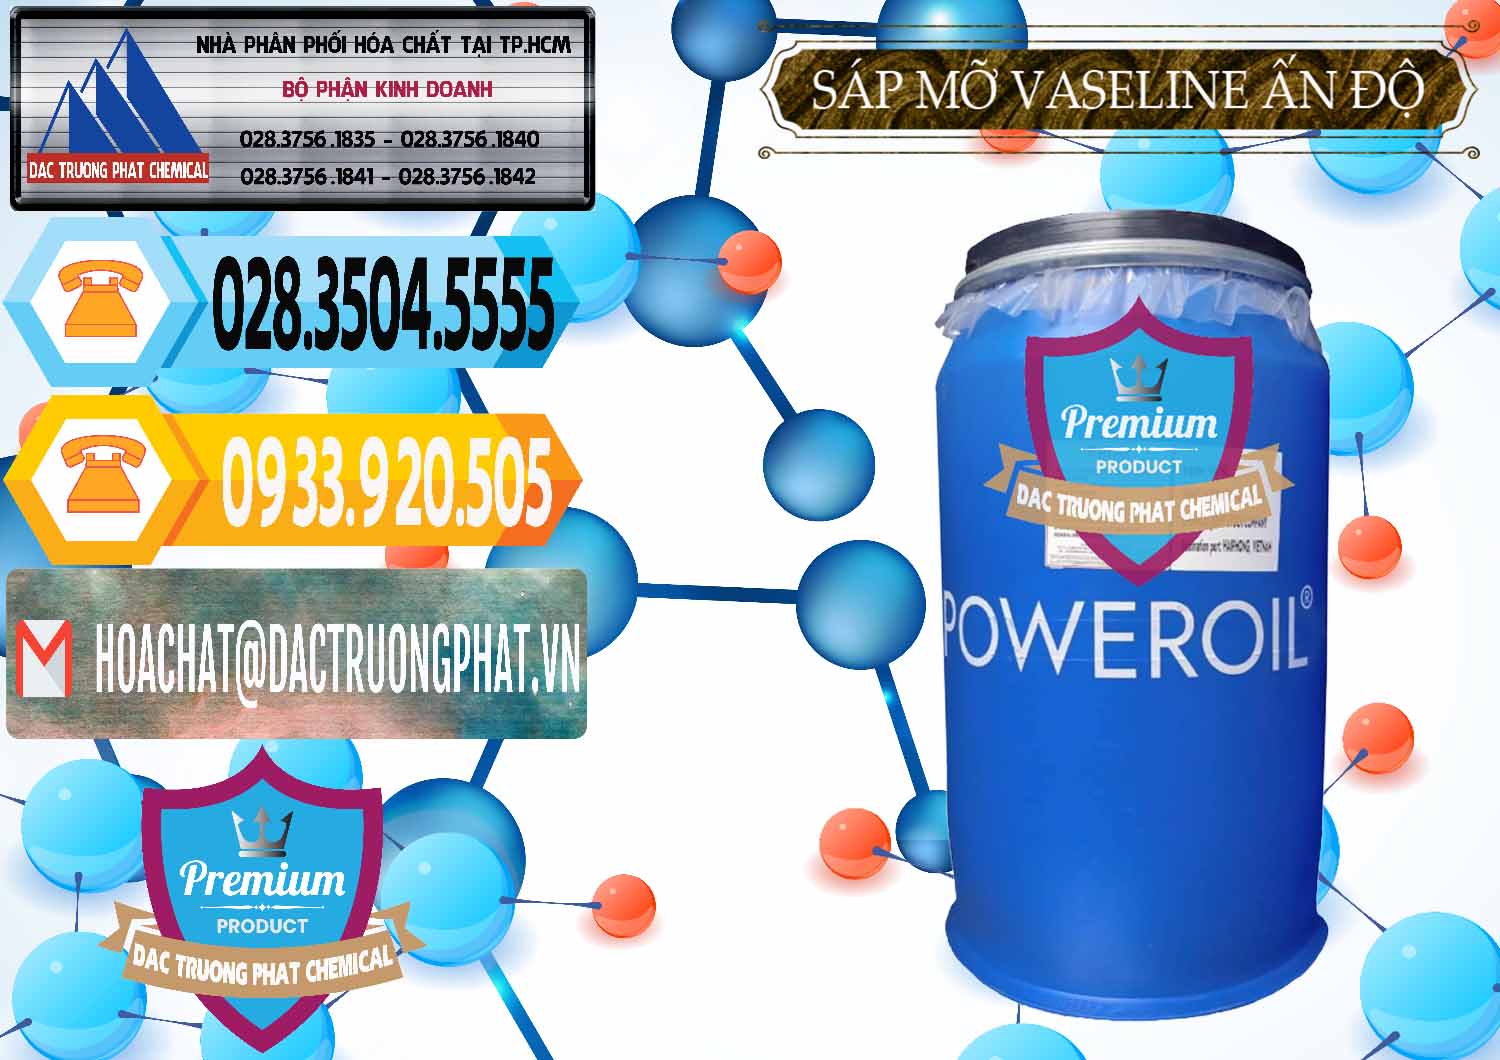 Cty nhập khẩu & bán Sáp Mỡ Vaseline Ấn Độ India - 0372 - Nơi cung cấp - phân phối hóa chất tại TP.HCM - hoachattayrua.net